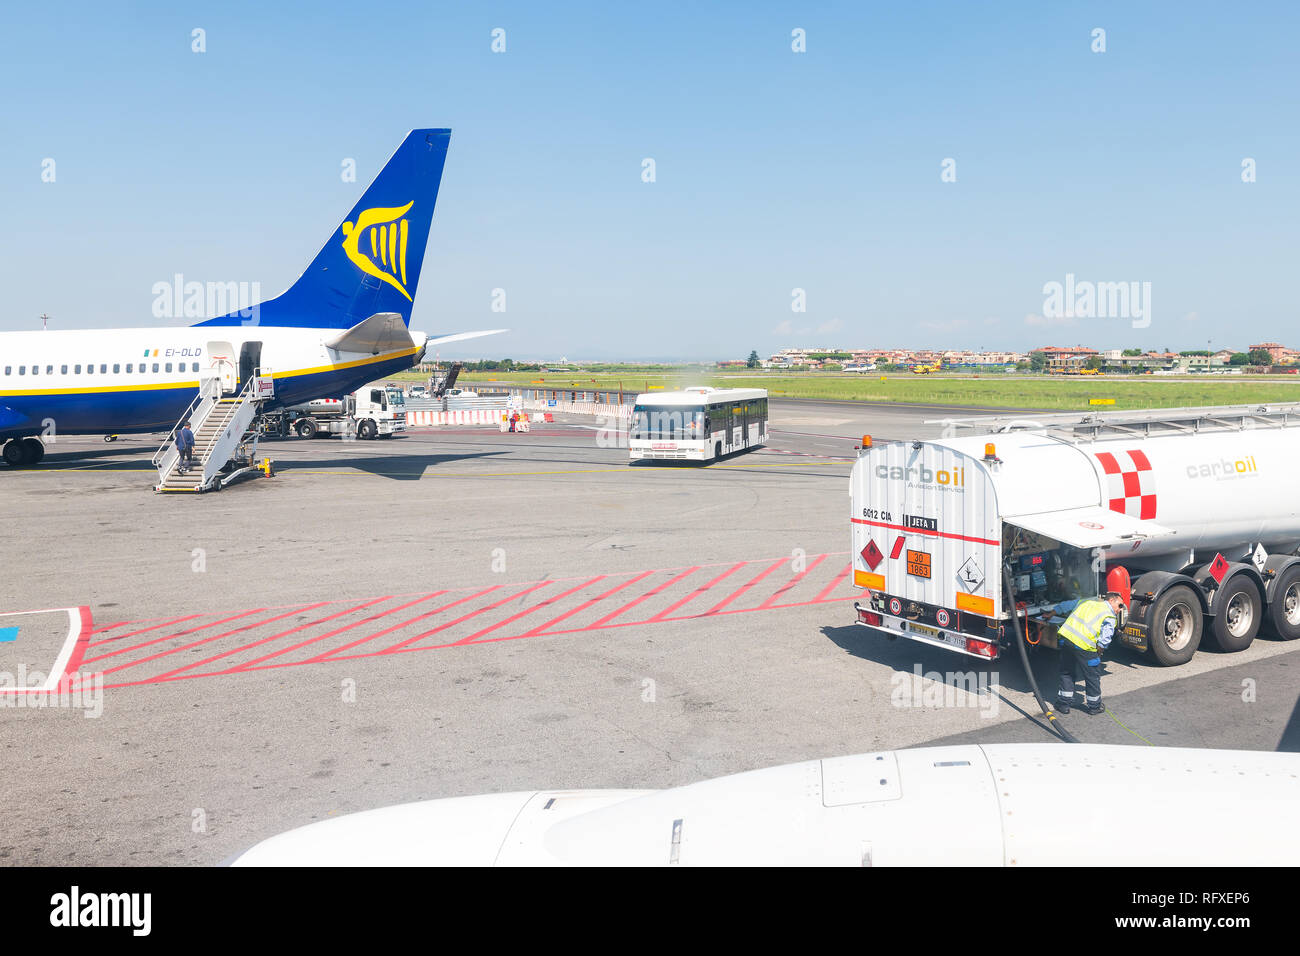 Ciampino, Italia - 6 Settembre 2018: aereo Ryanair interne dell'Unione europea volo a basso costo delle compagnie aeree a basso costo con in aeroporto di Roma e il serbatoio del combustibile carboil Foto Stock